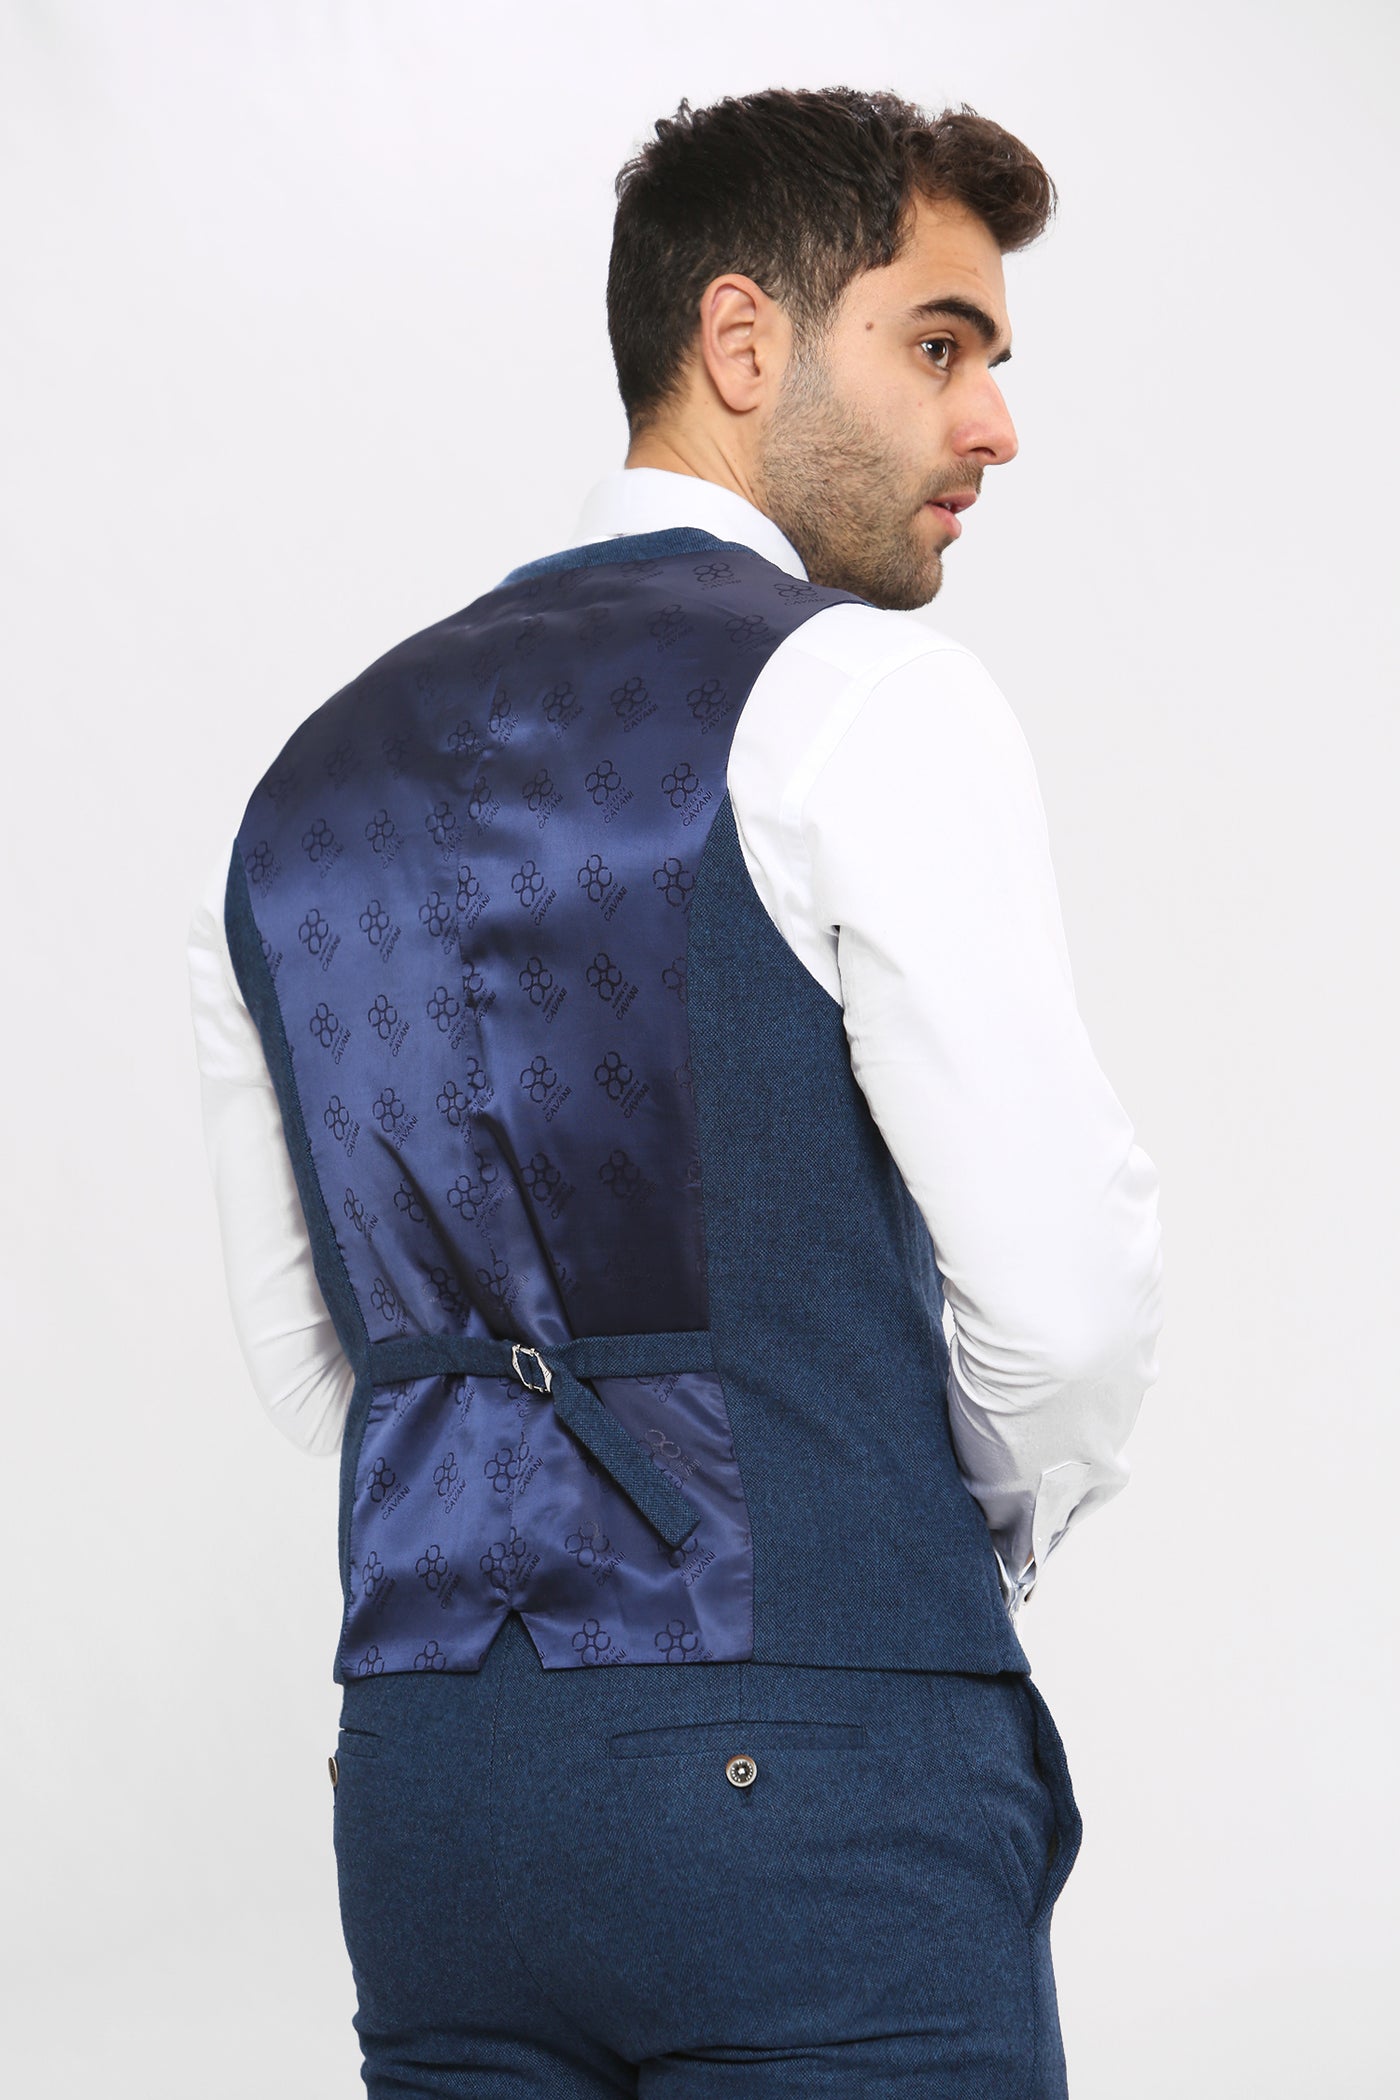 Cavani ORSON - Blue Tweed Three Piece Suit